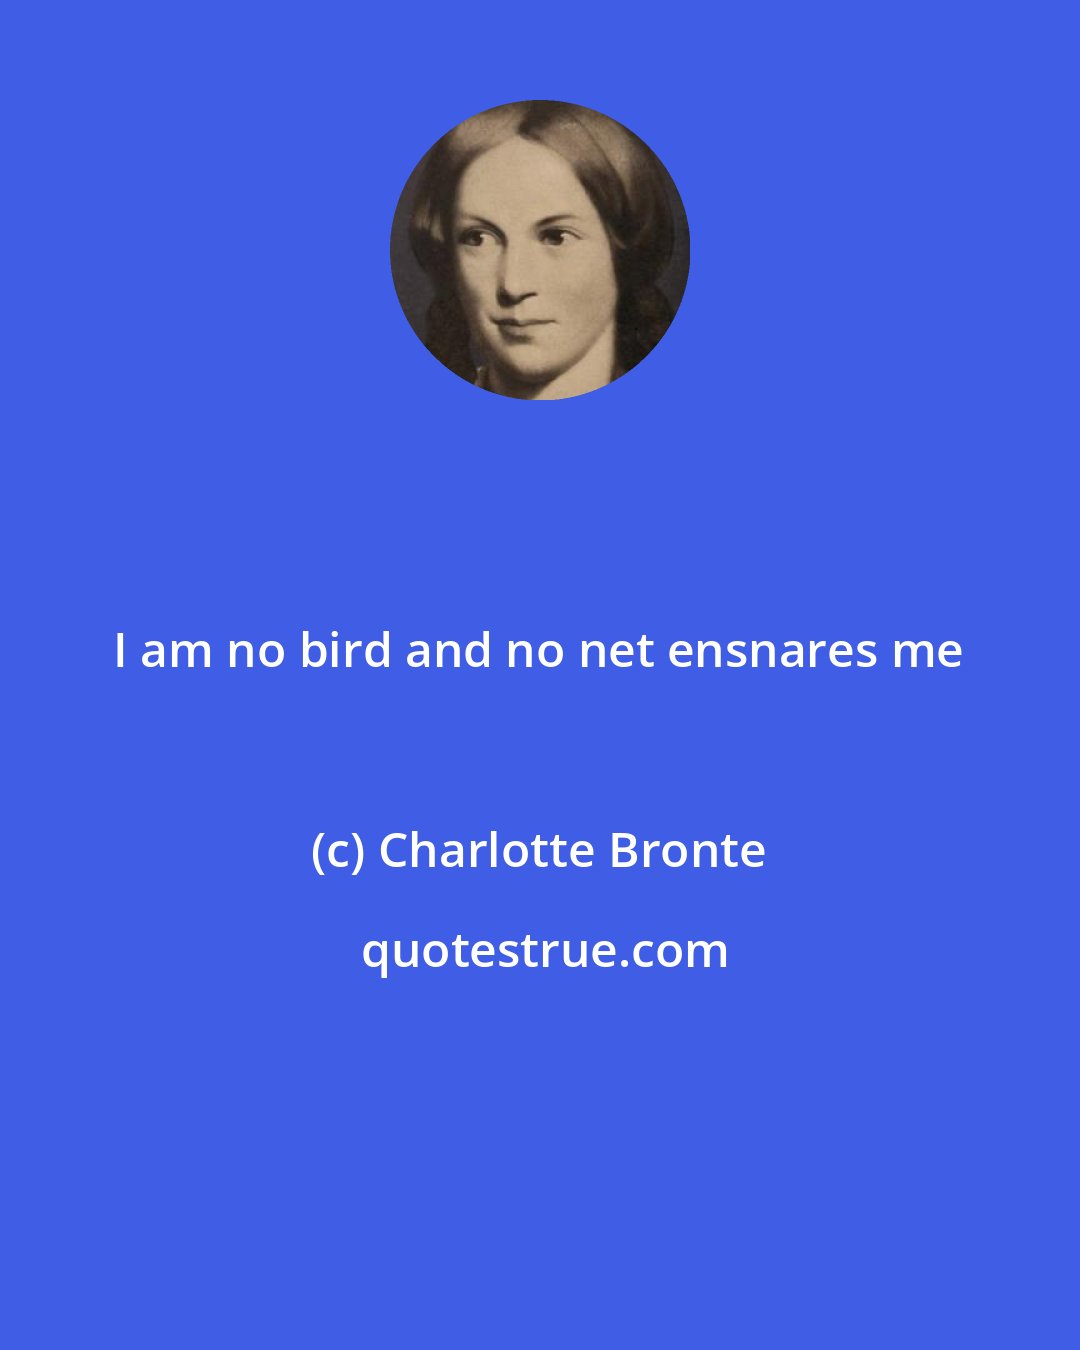 Charlotte Bronte: I am no bird and no net ensnares me